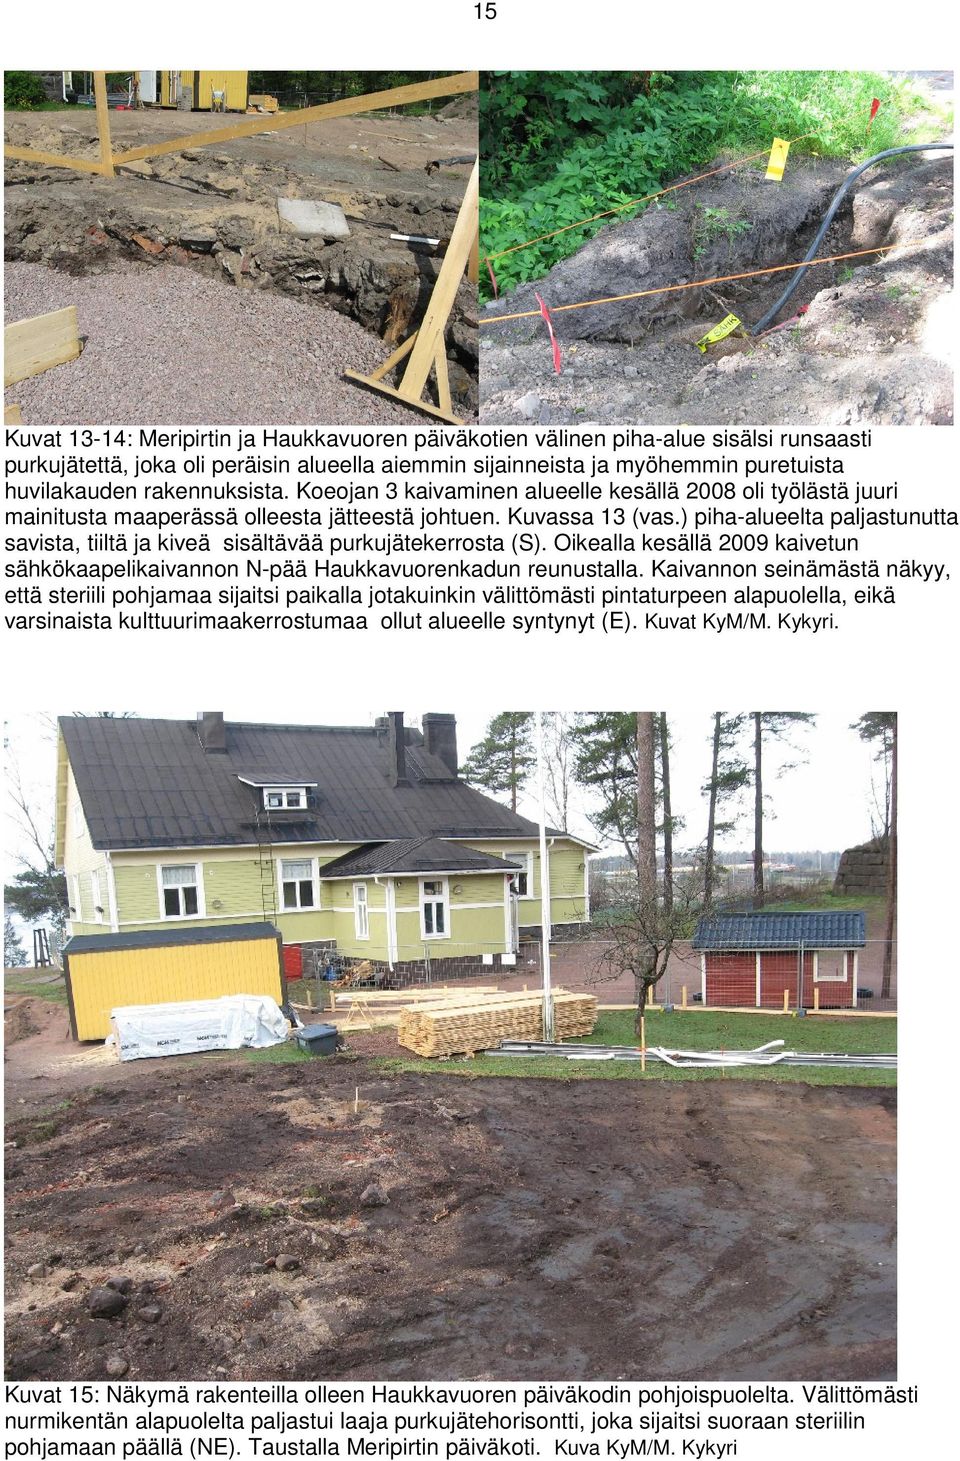 ) piha-alueelta paljastunutta savista, tiiltä ja kiveä sisältävää purkujätekerrosta (S). Oikealla kesällä 2009 kaivetun sähkökaapelikaivannon N-pää Haukkavuorenkadun reunustalla.